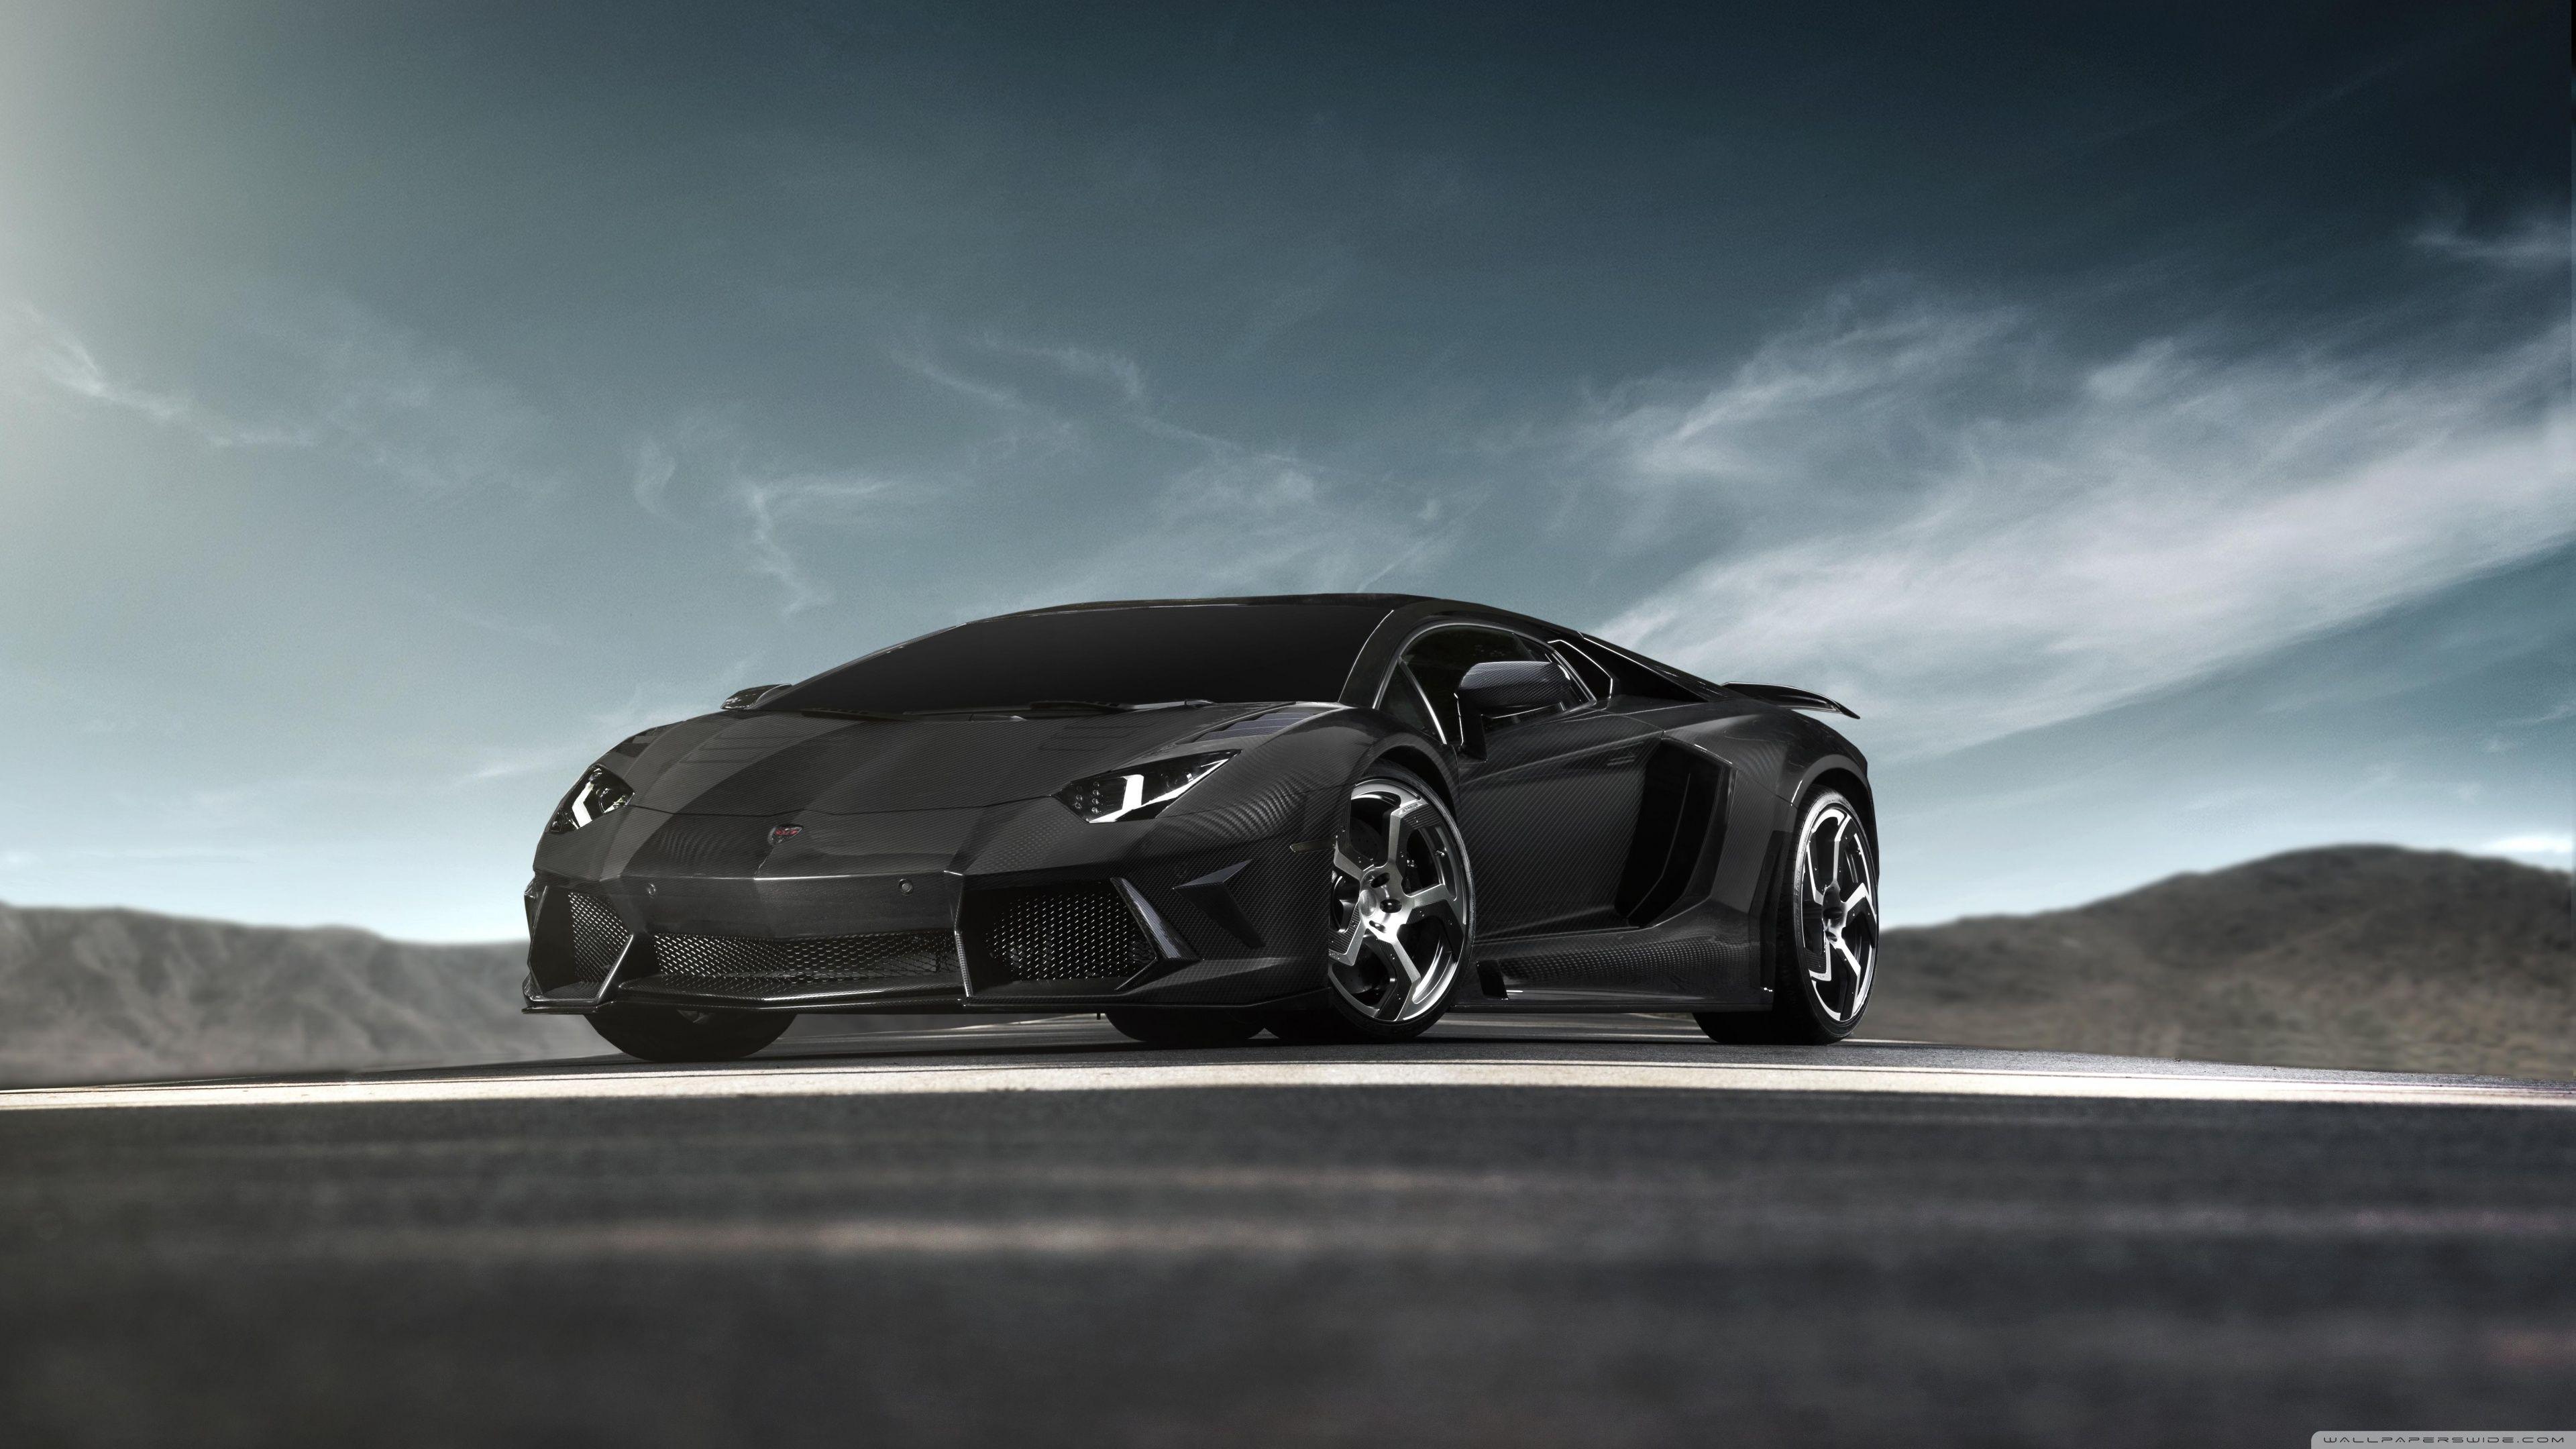 3840x2160 Siêu xe Lamborghini Aventador màu đen â ?? ¤ Hình nền máy tính để bàn HD 4K